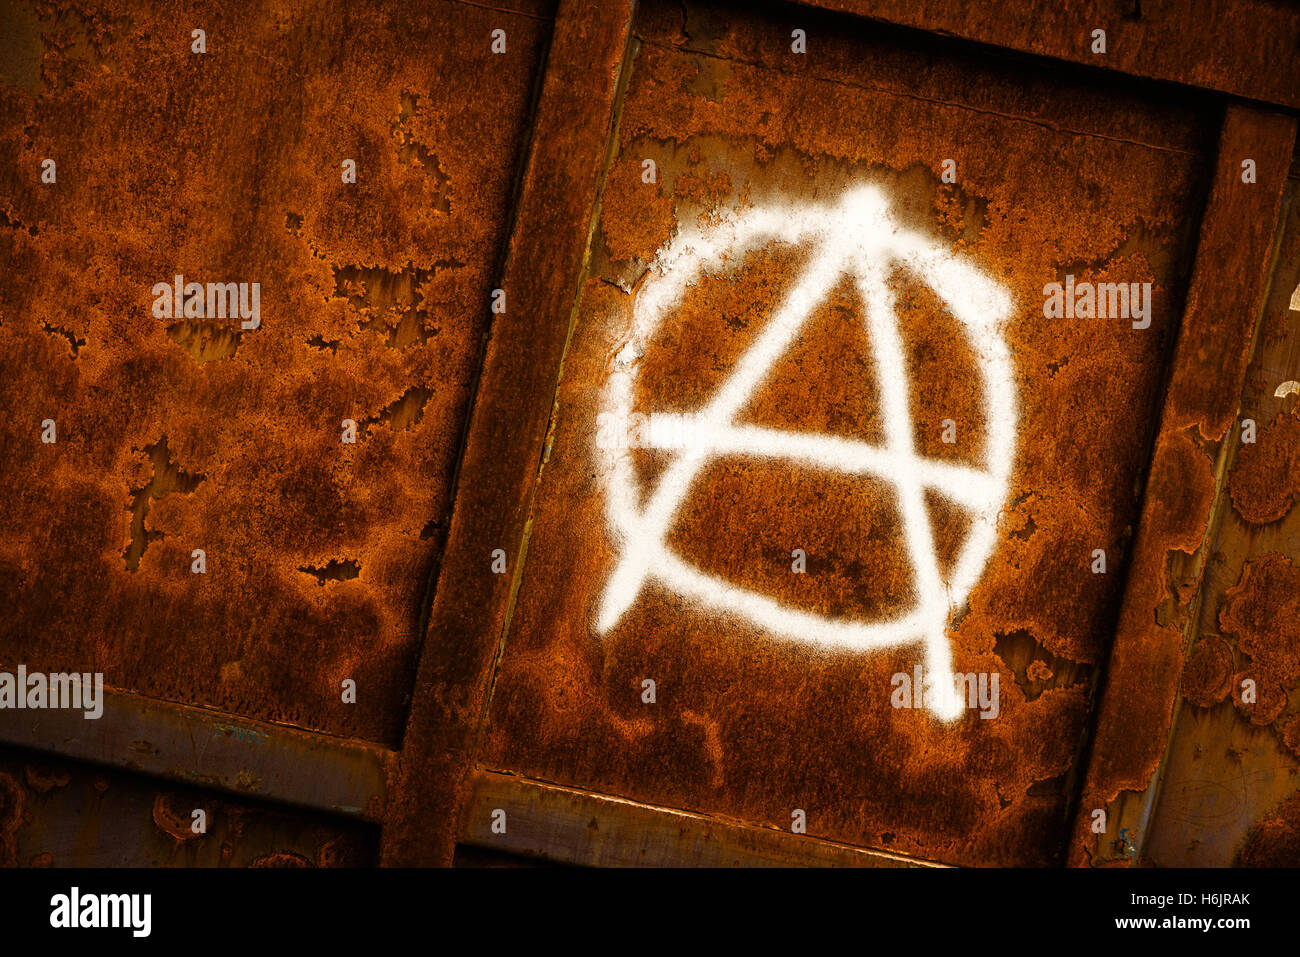 Símbolo de la Anarquía spray graffiti pintado en la pared de metal corroído grunge Foto de stock